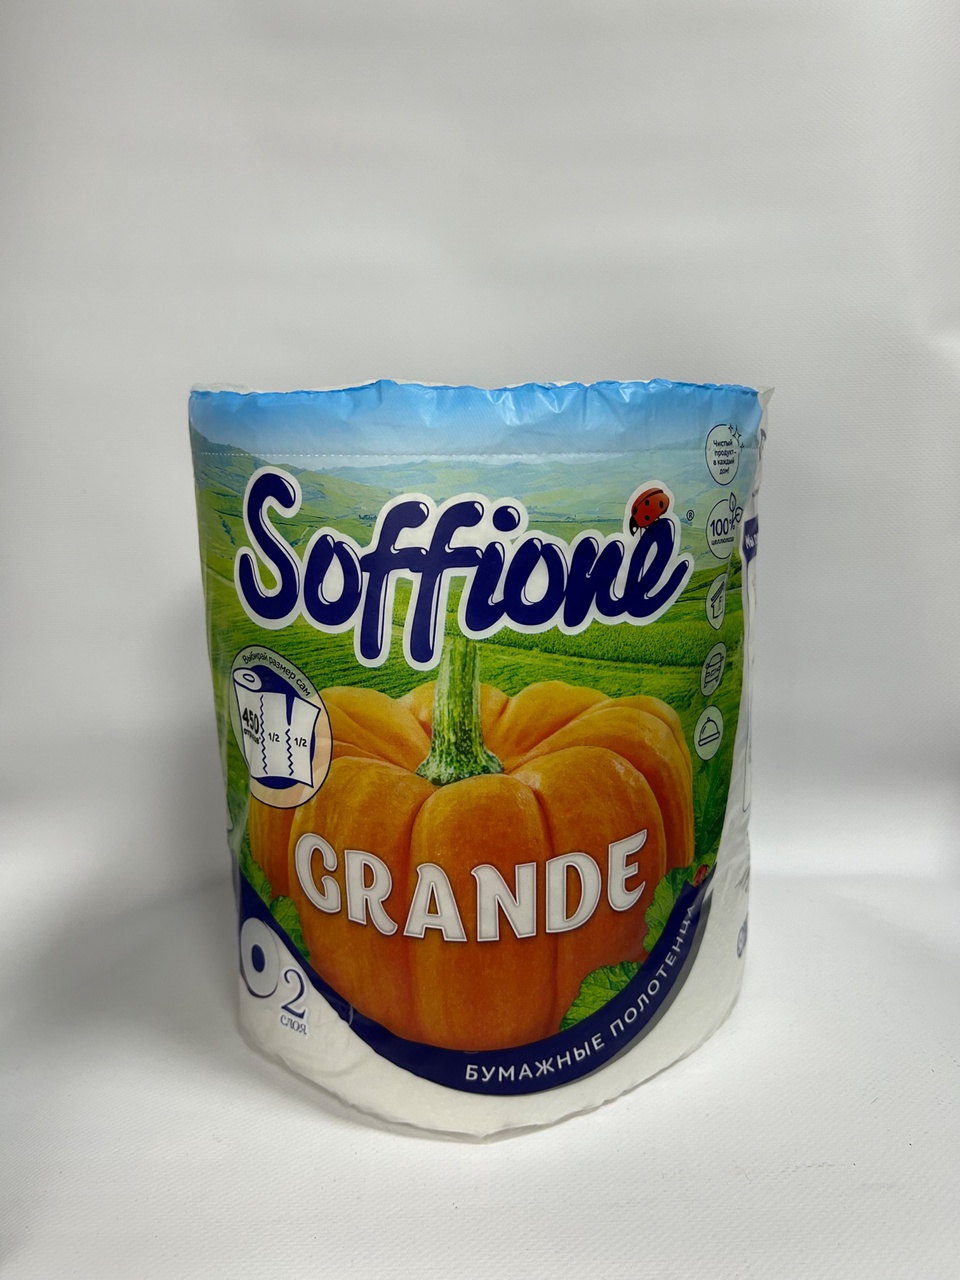 Бумажные полотенца Soffione “Grande” - 180 ₽, заказать онлайн.